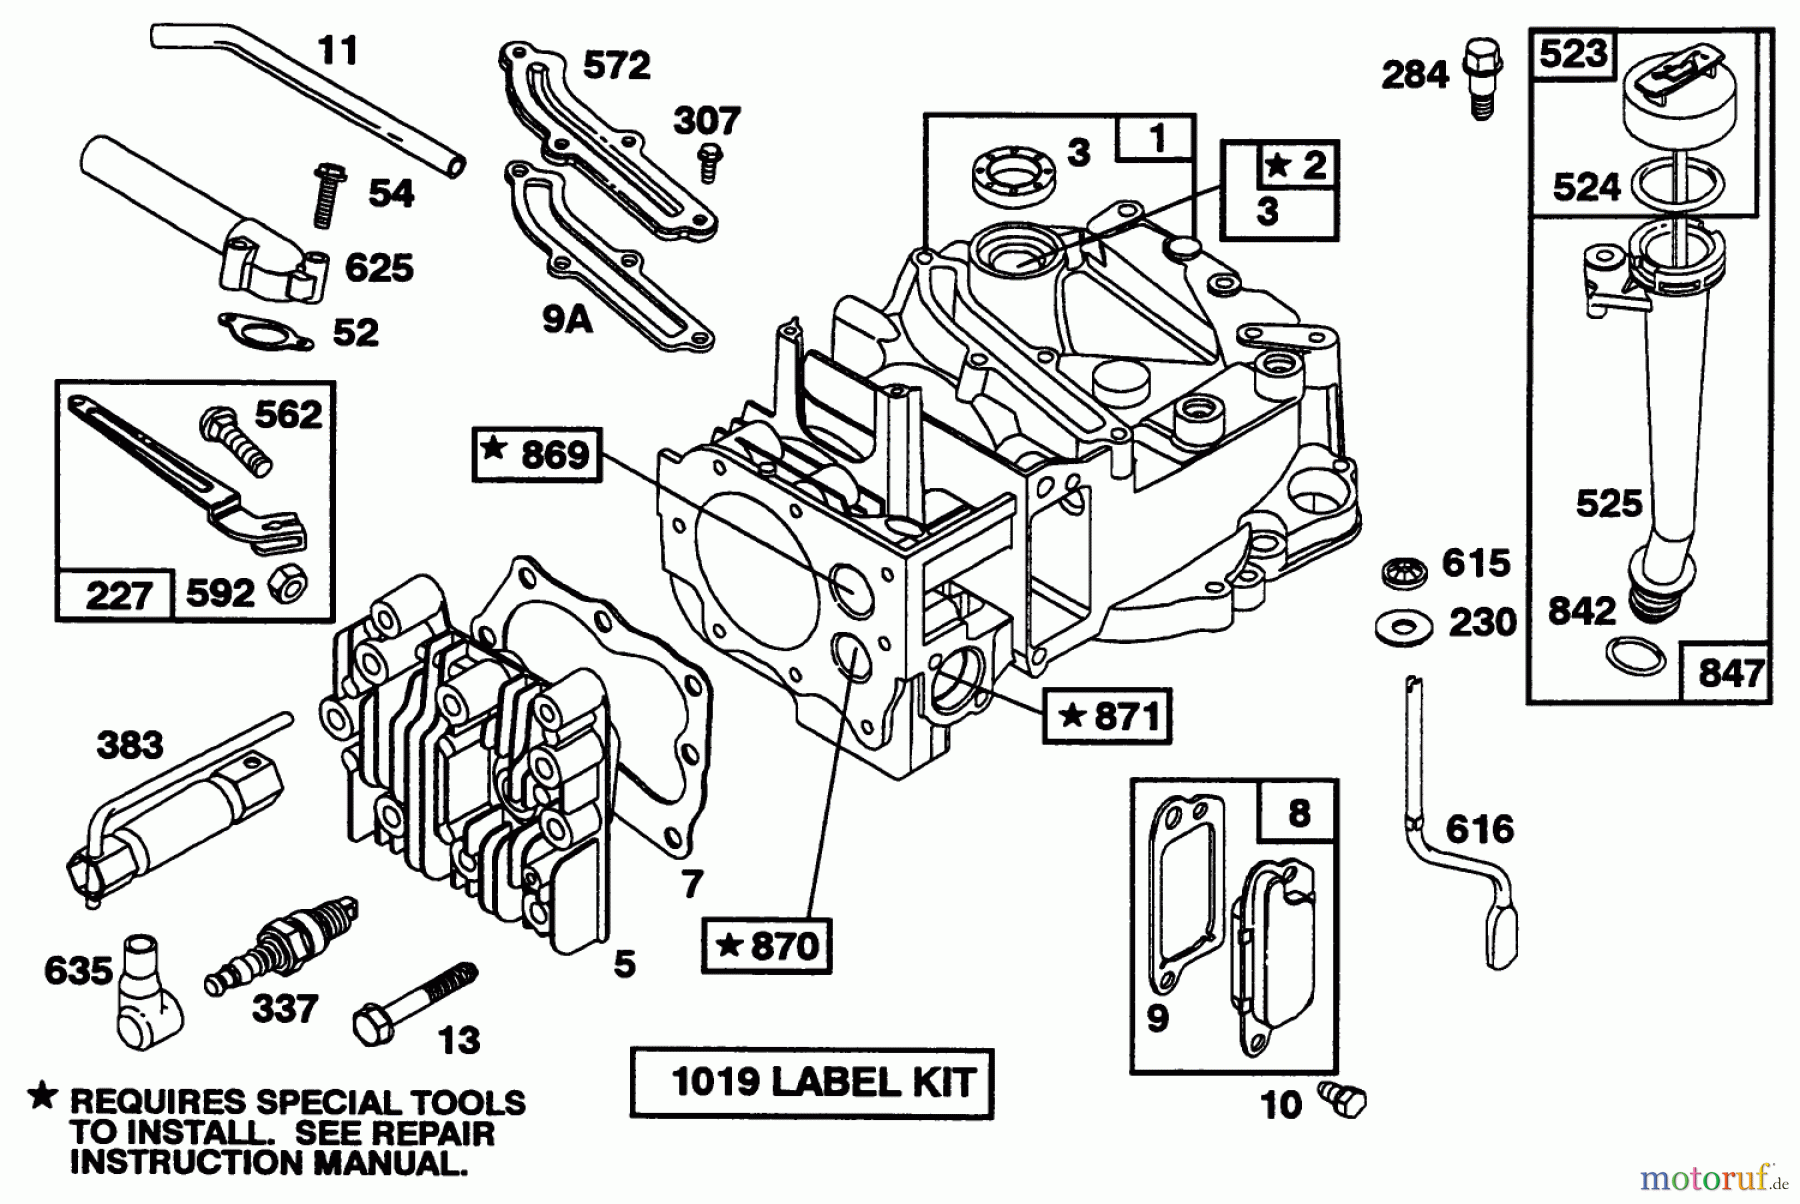  Toro Neu Mowers, Walk-Behind Seite 1 20433 - Toro Lawnmower, 1993 (39000001-39999999) ENGINE BRIGGS & STRATTON MODEL 122702-3171-01 #1